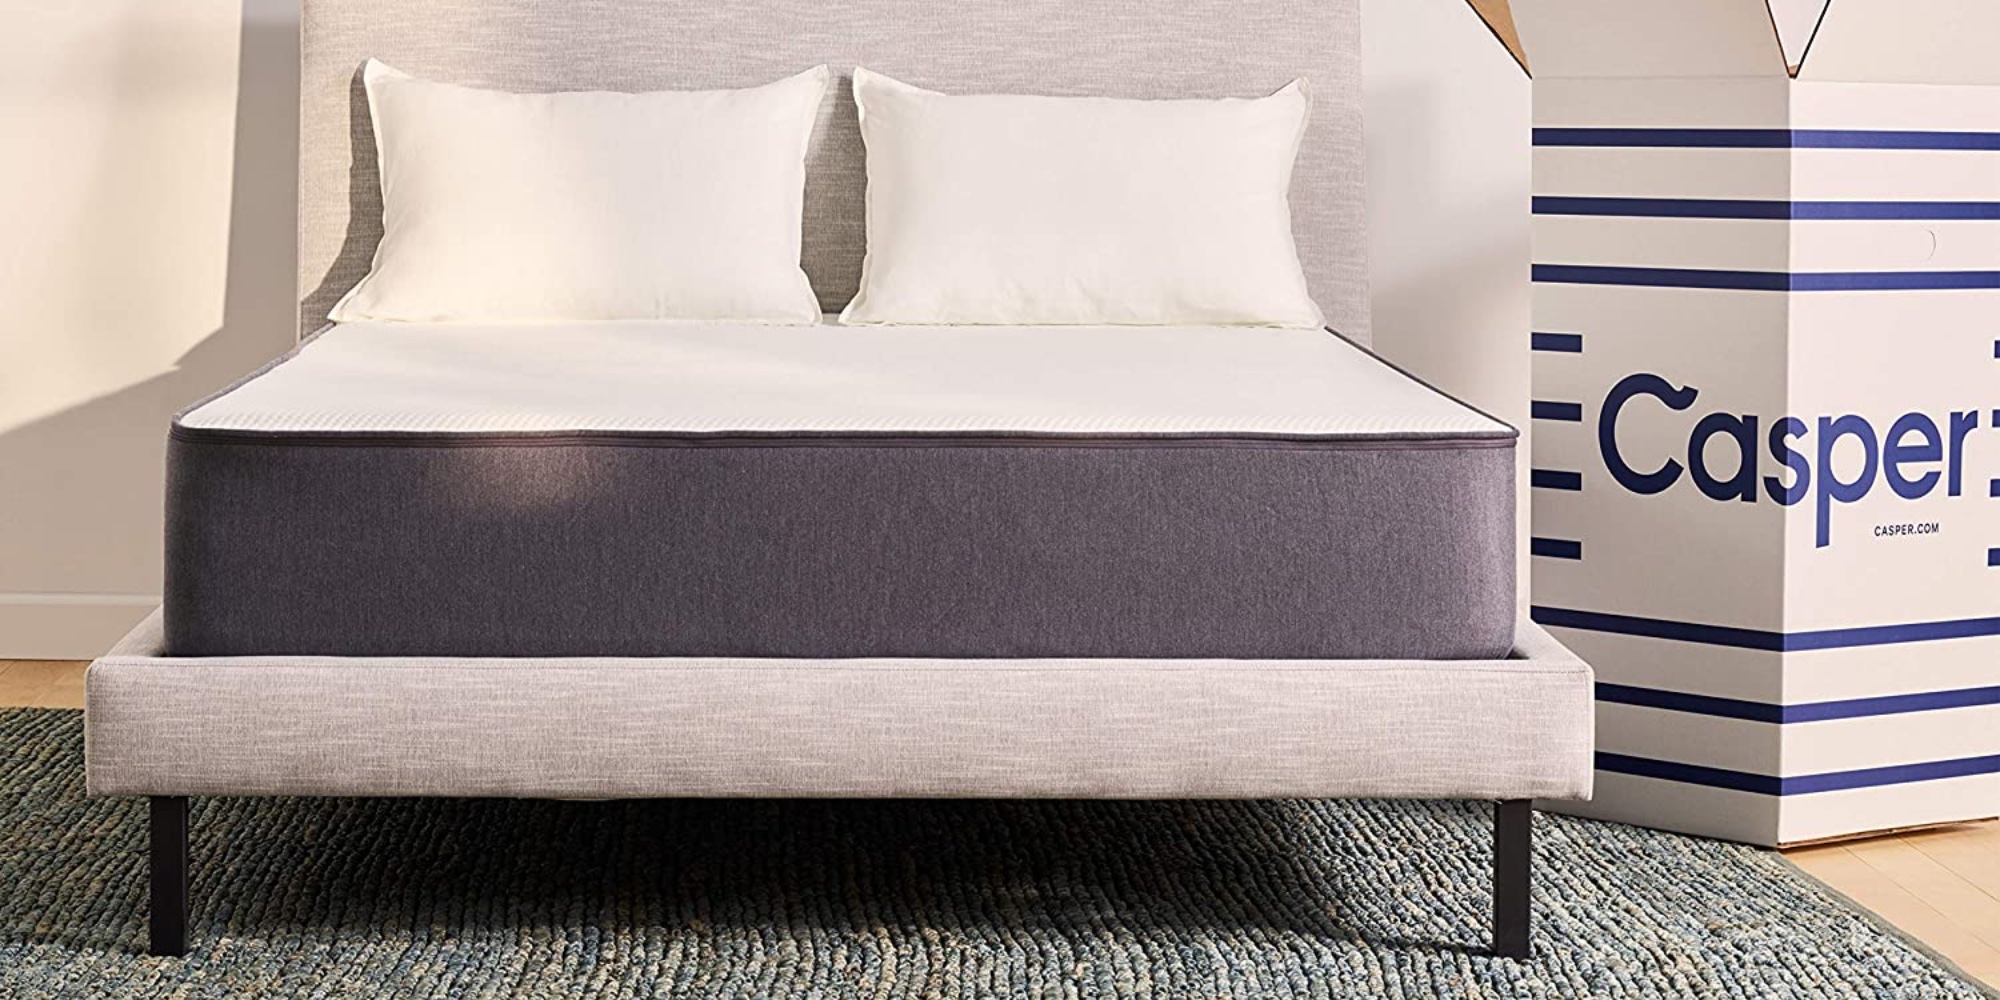 Best Collection of 77+ Awe-inspiring the casper original foam mattress For Every Budget